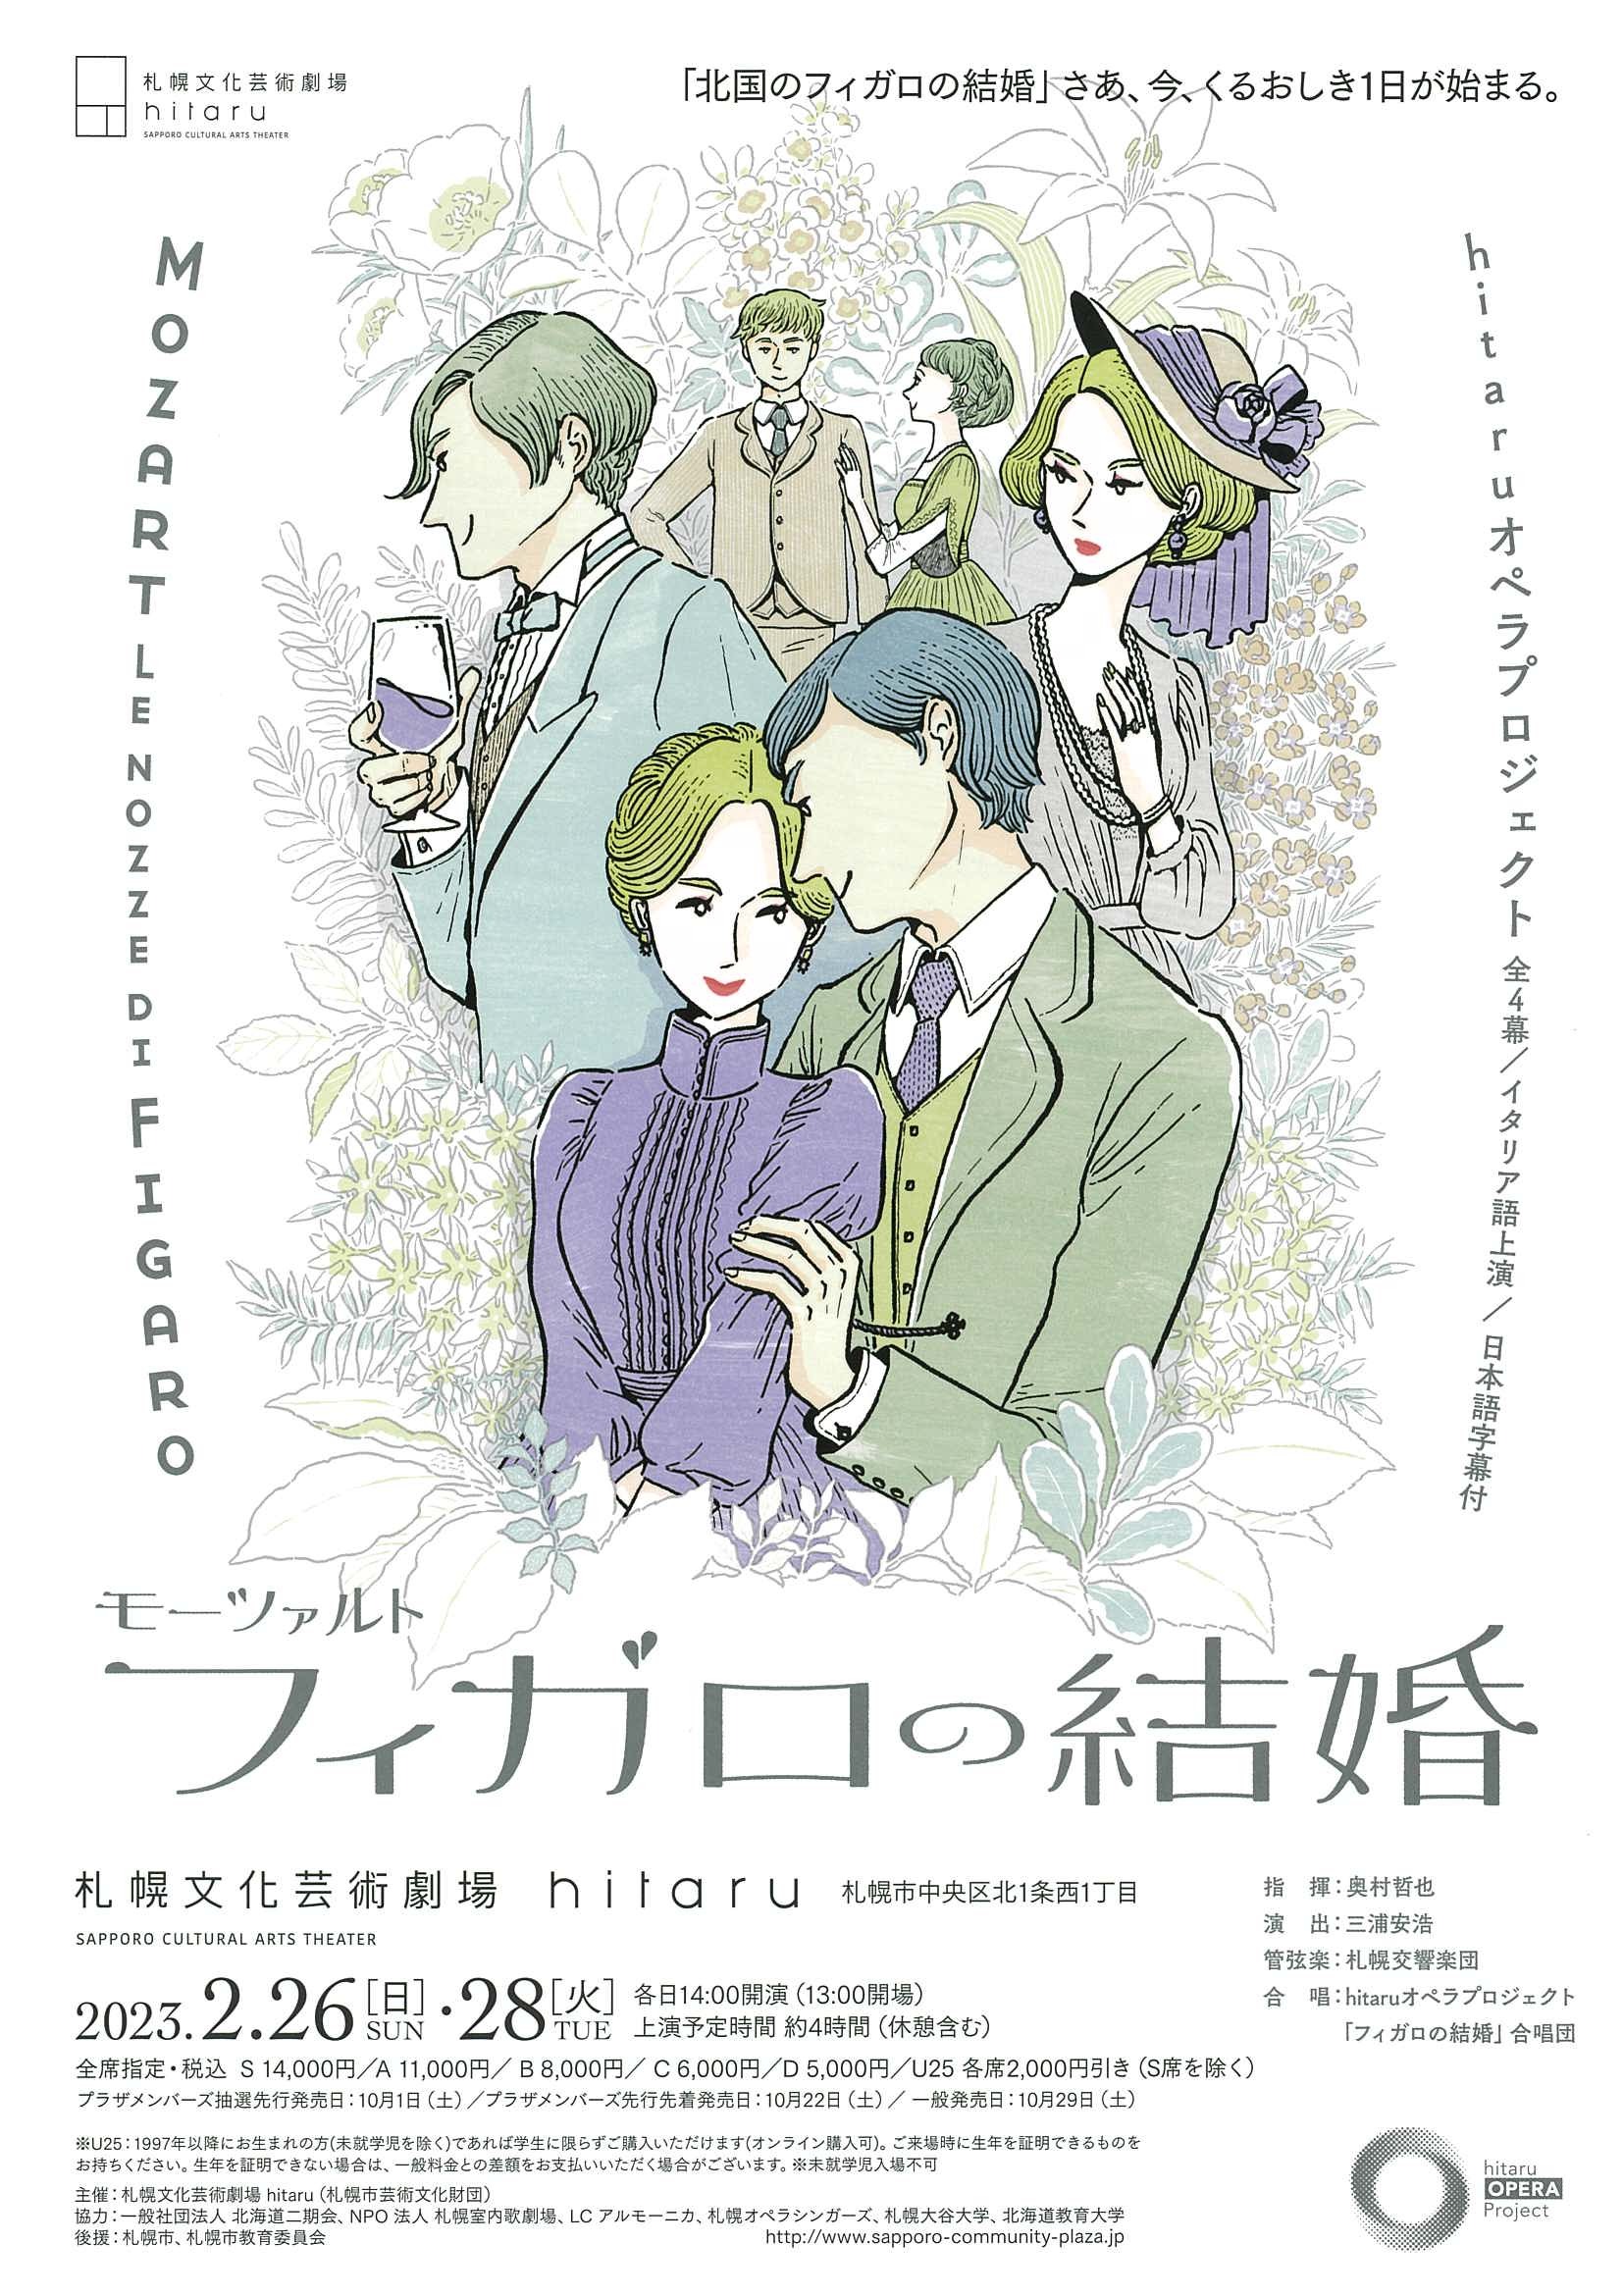 モーツァルト「フィガロの結婚」～hitaruオペラプロジェクト | 札幌